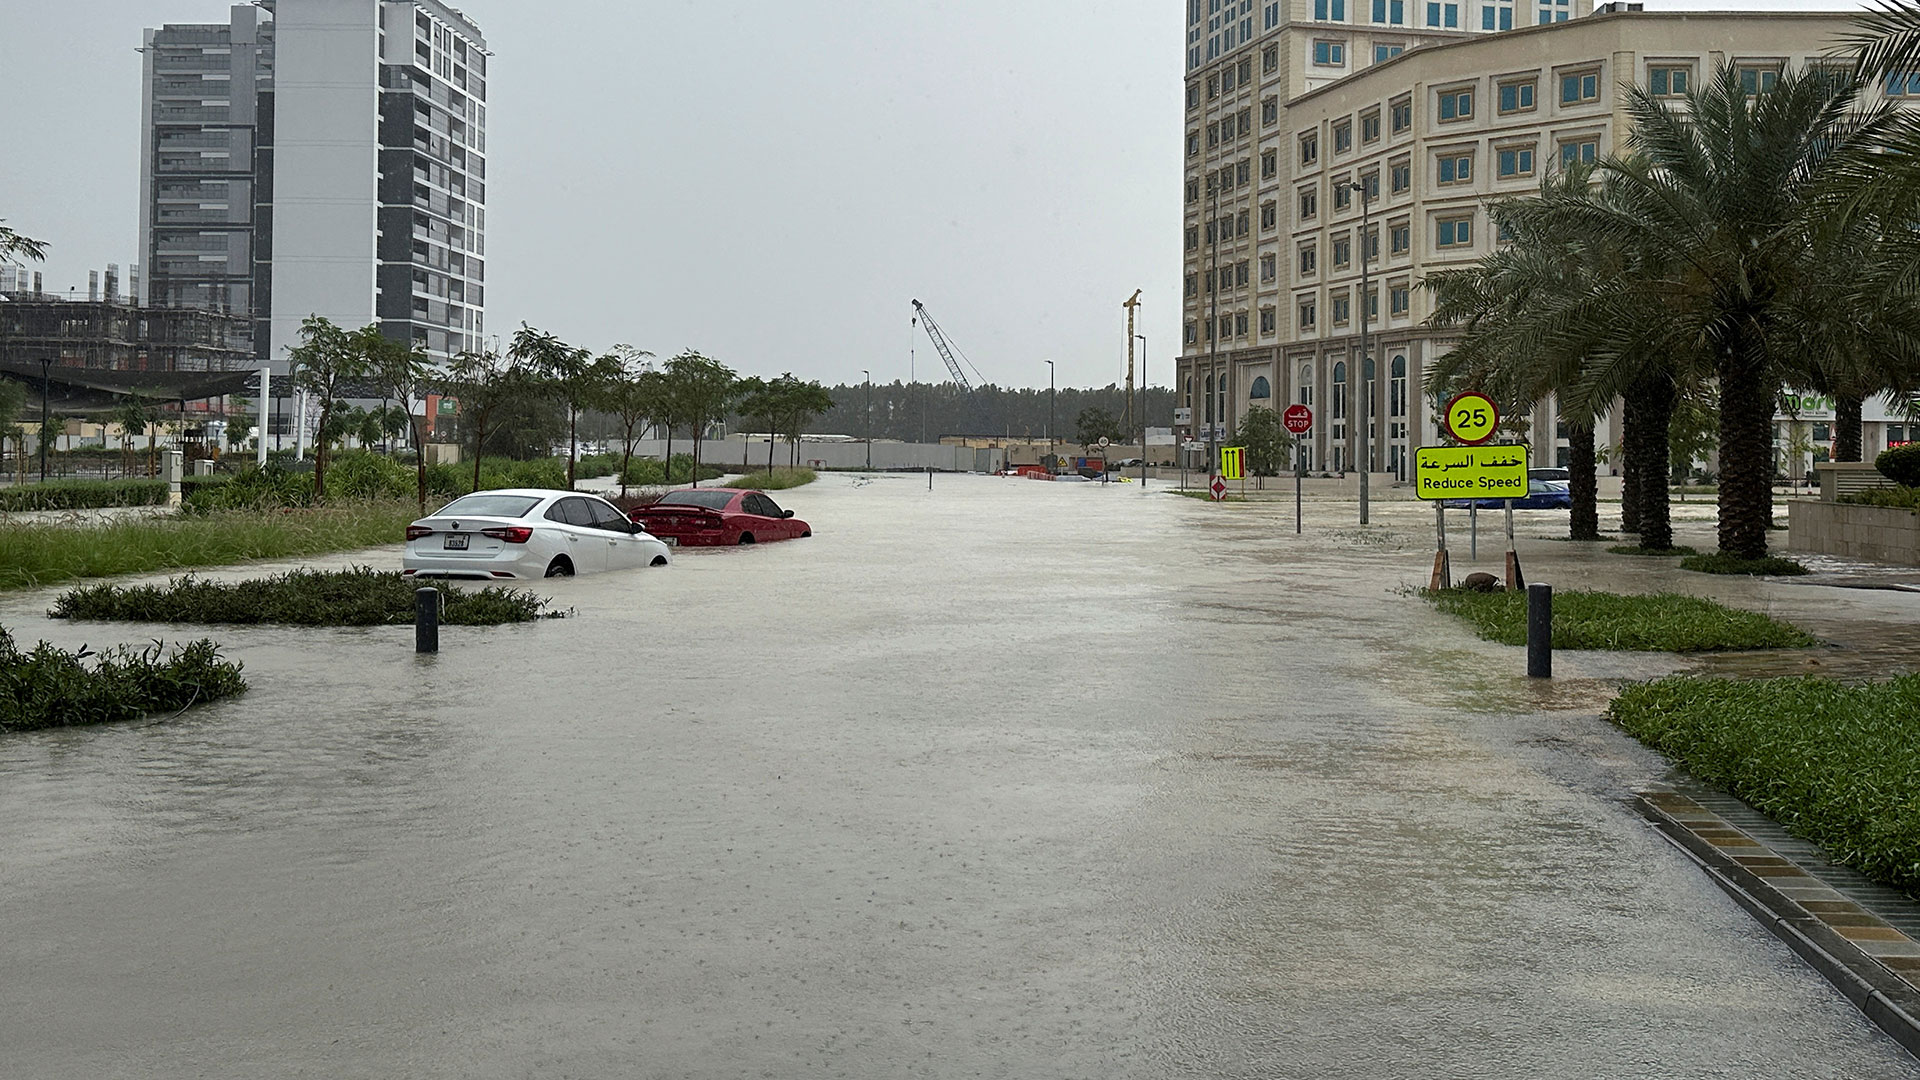 πλημμύρες στο ντουμπάι από σφοδρές νεροποντές